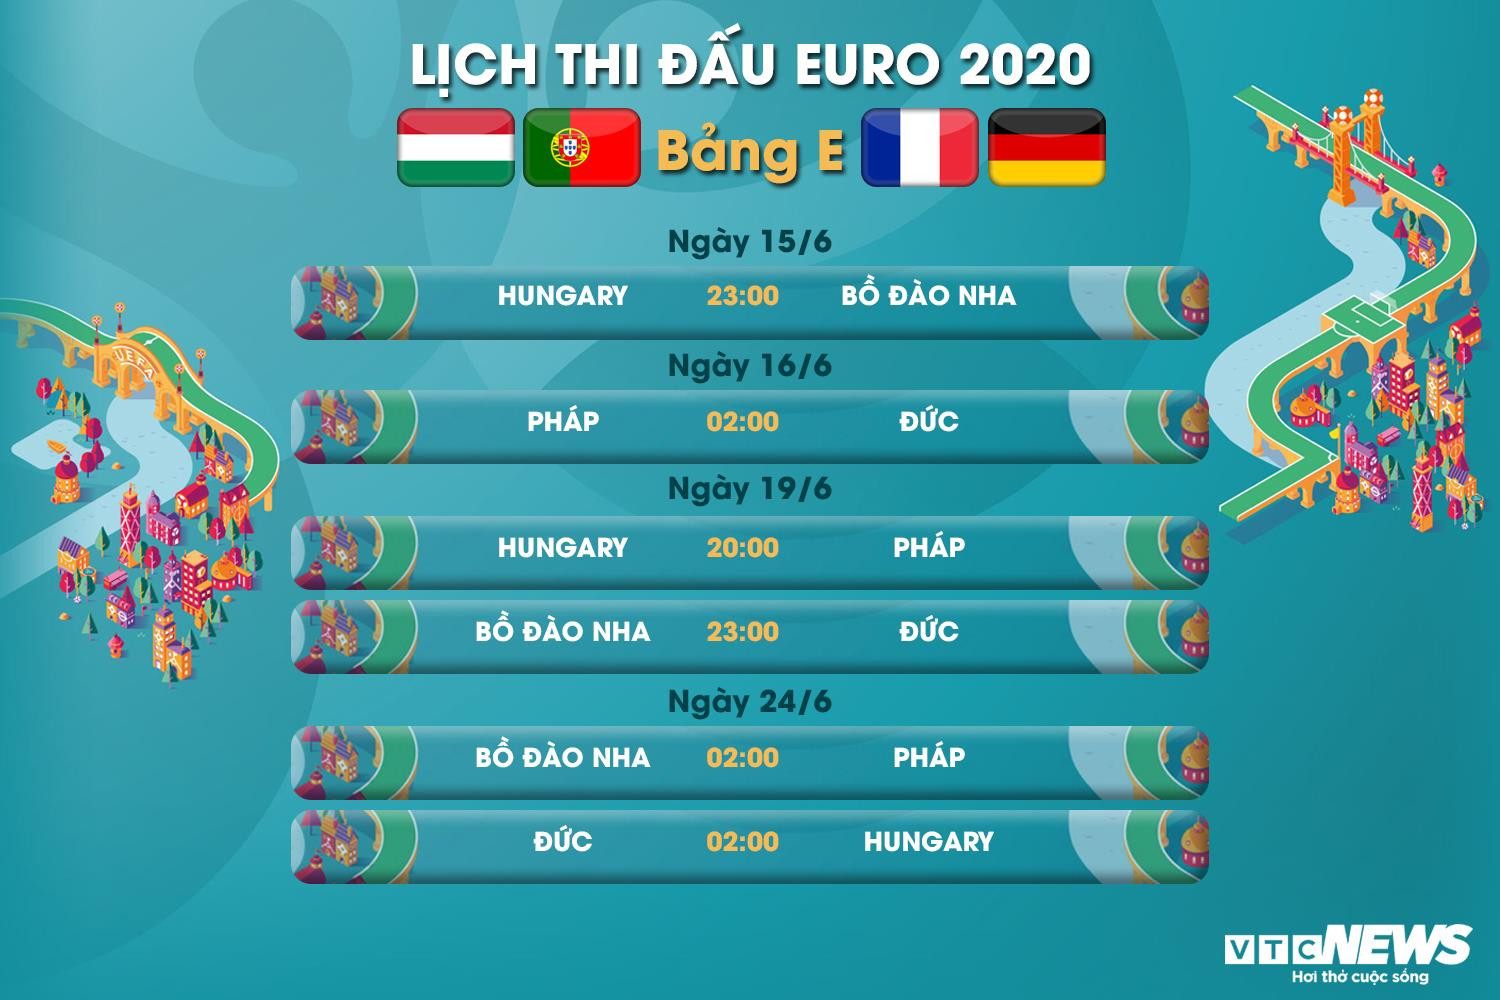 Lịch thi đấu EURO 2020 bảng F - 1